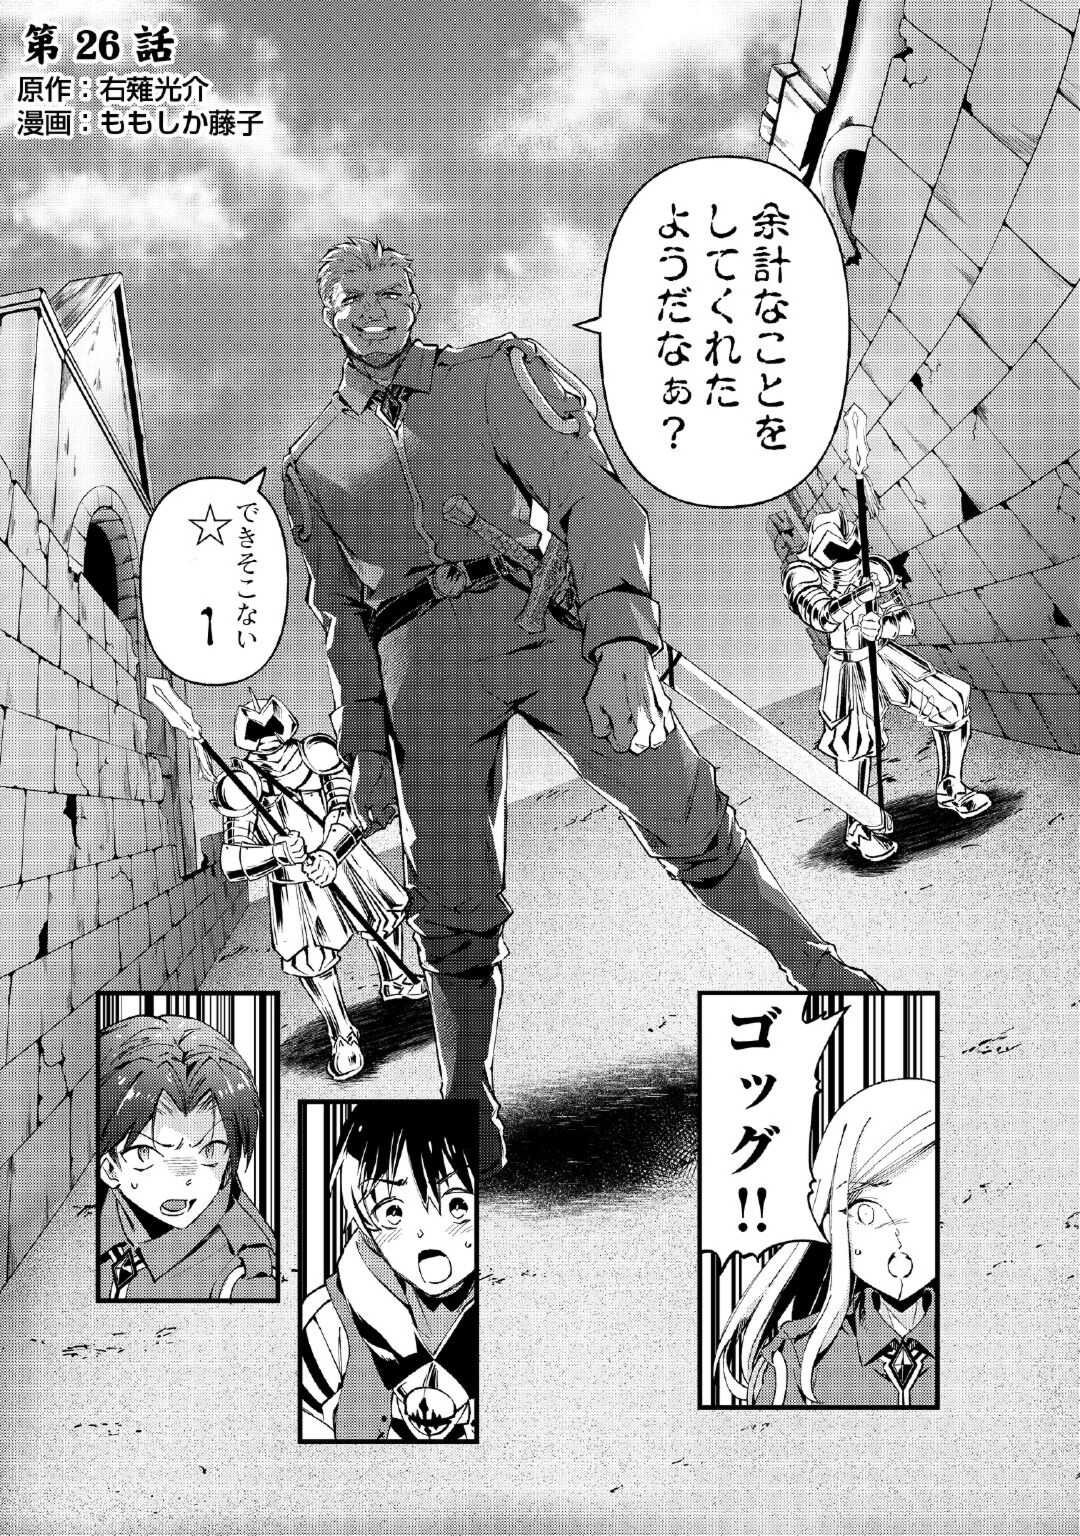 Ochikobore 1 Mahou Tsukai wa, Kyou mo Muishiki ni Cheat o Tsukau - Chapter 26 - Page 1